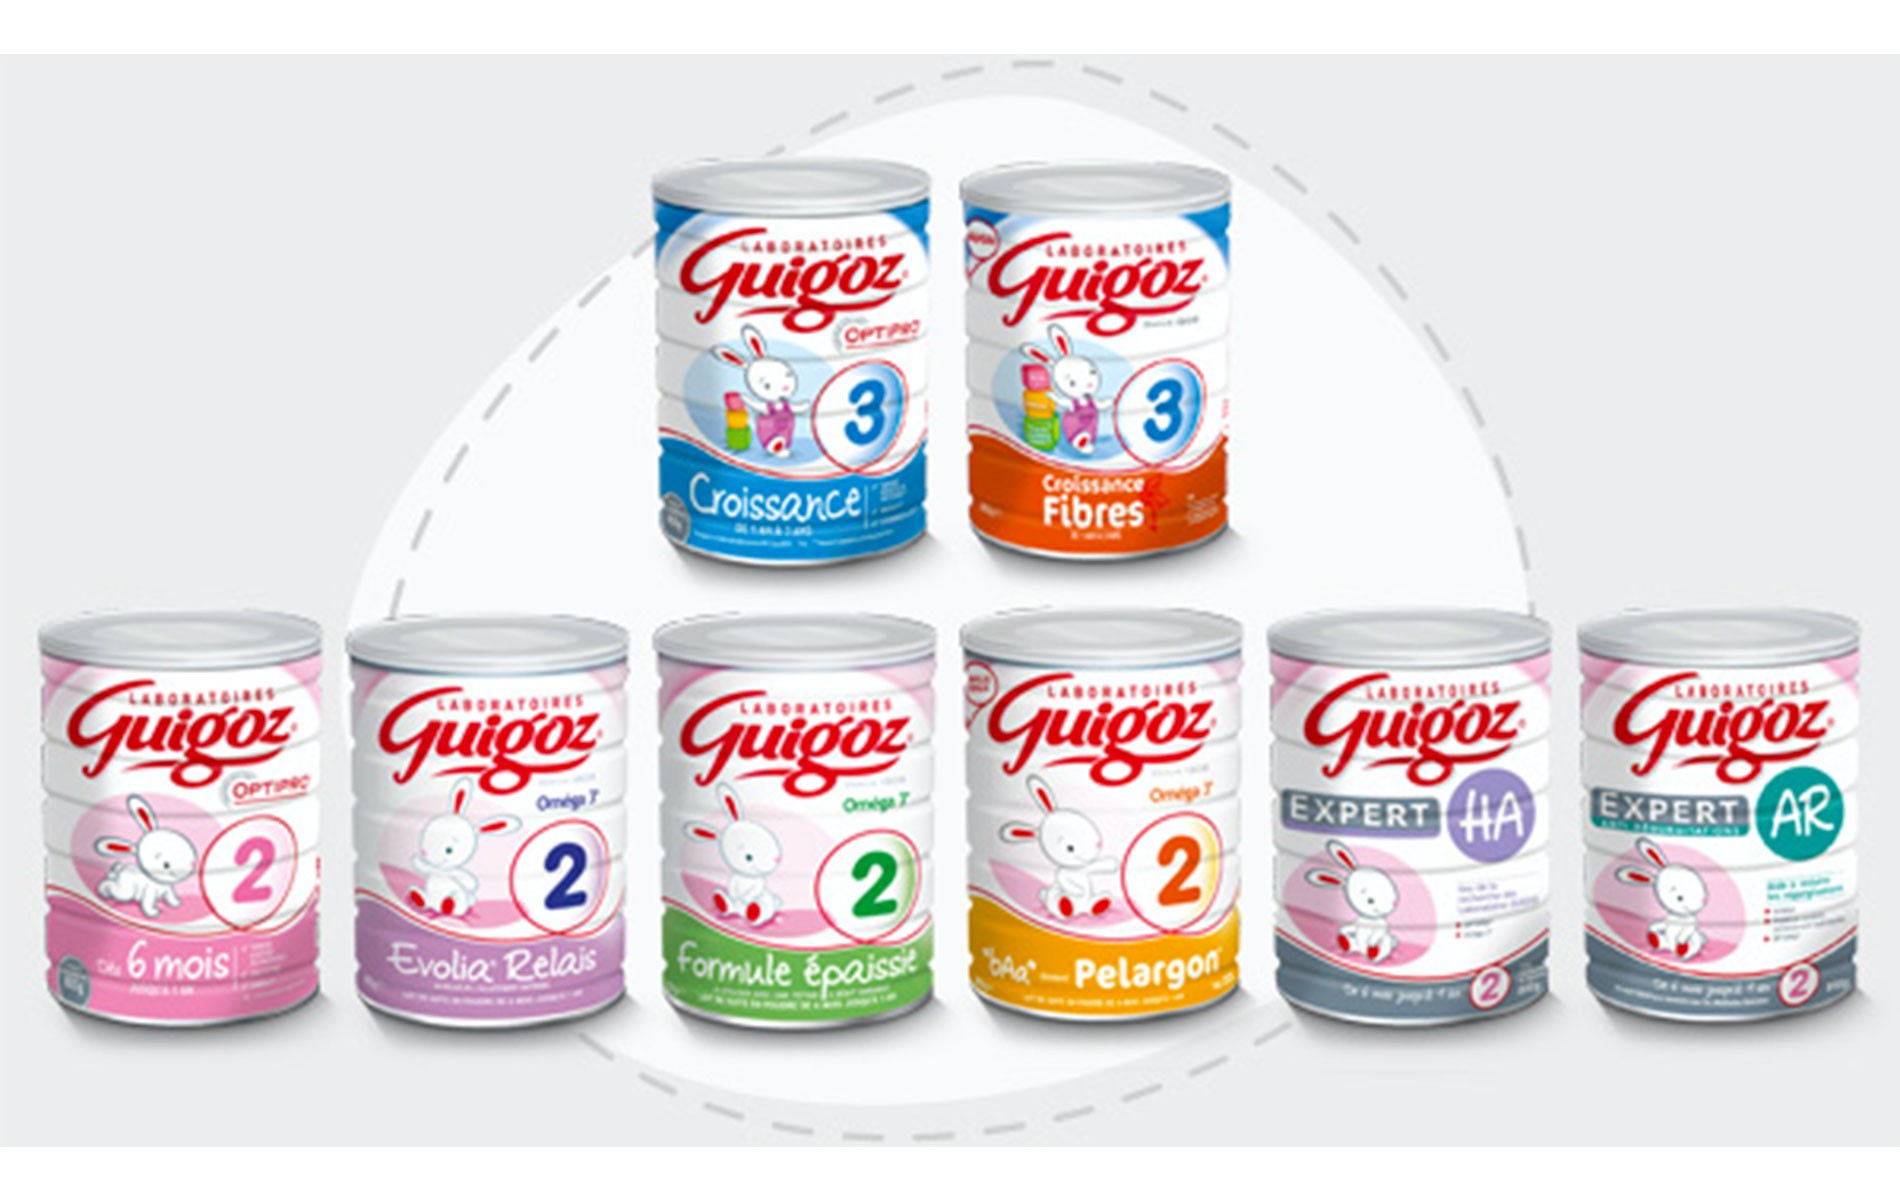 Découvrez les gammes de produits Guigoz